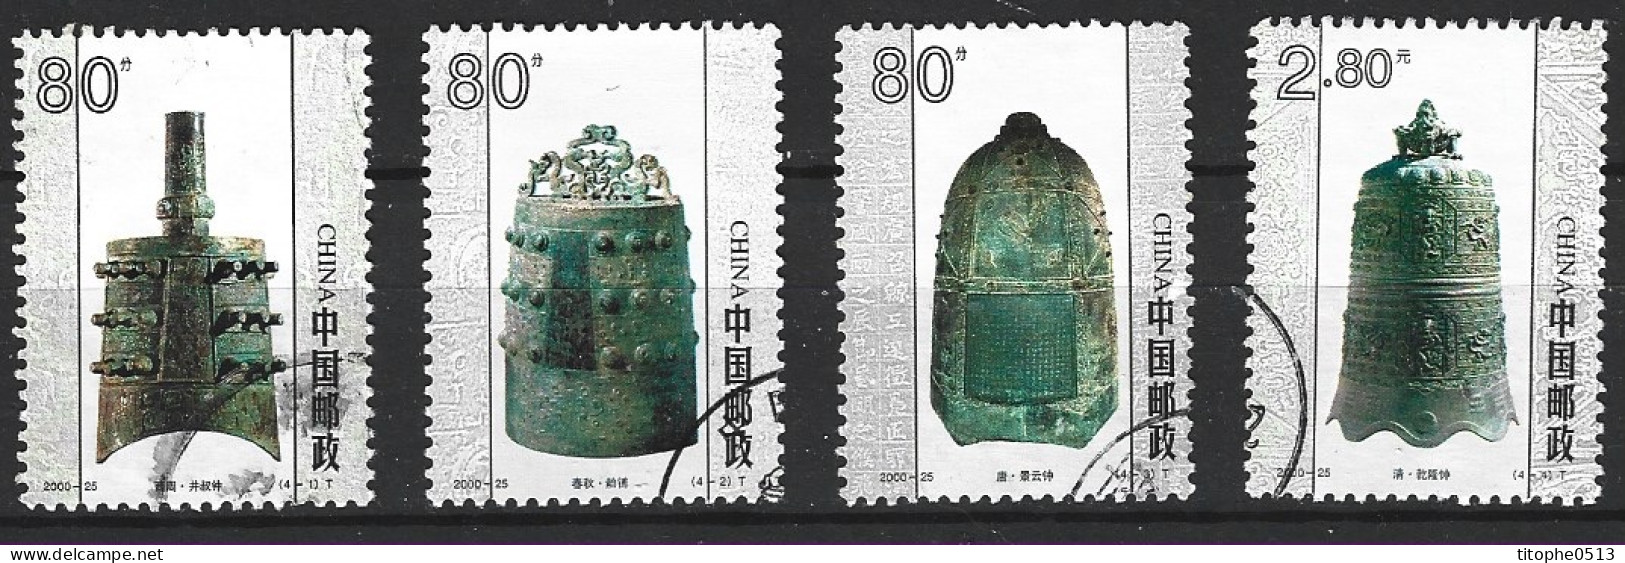 CHINE. N°3858-61 Oblitérés De 2000. Cloches De La Chine Ancienne. - Used Stamps